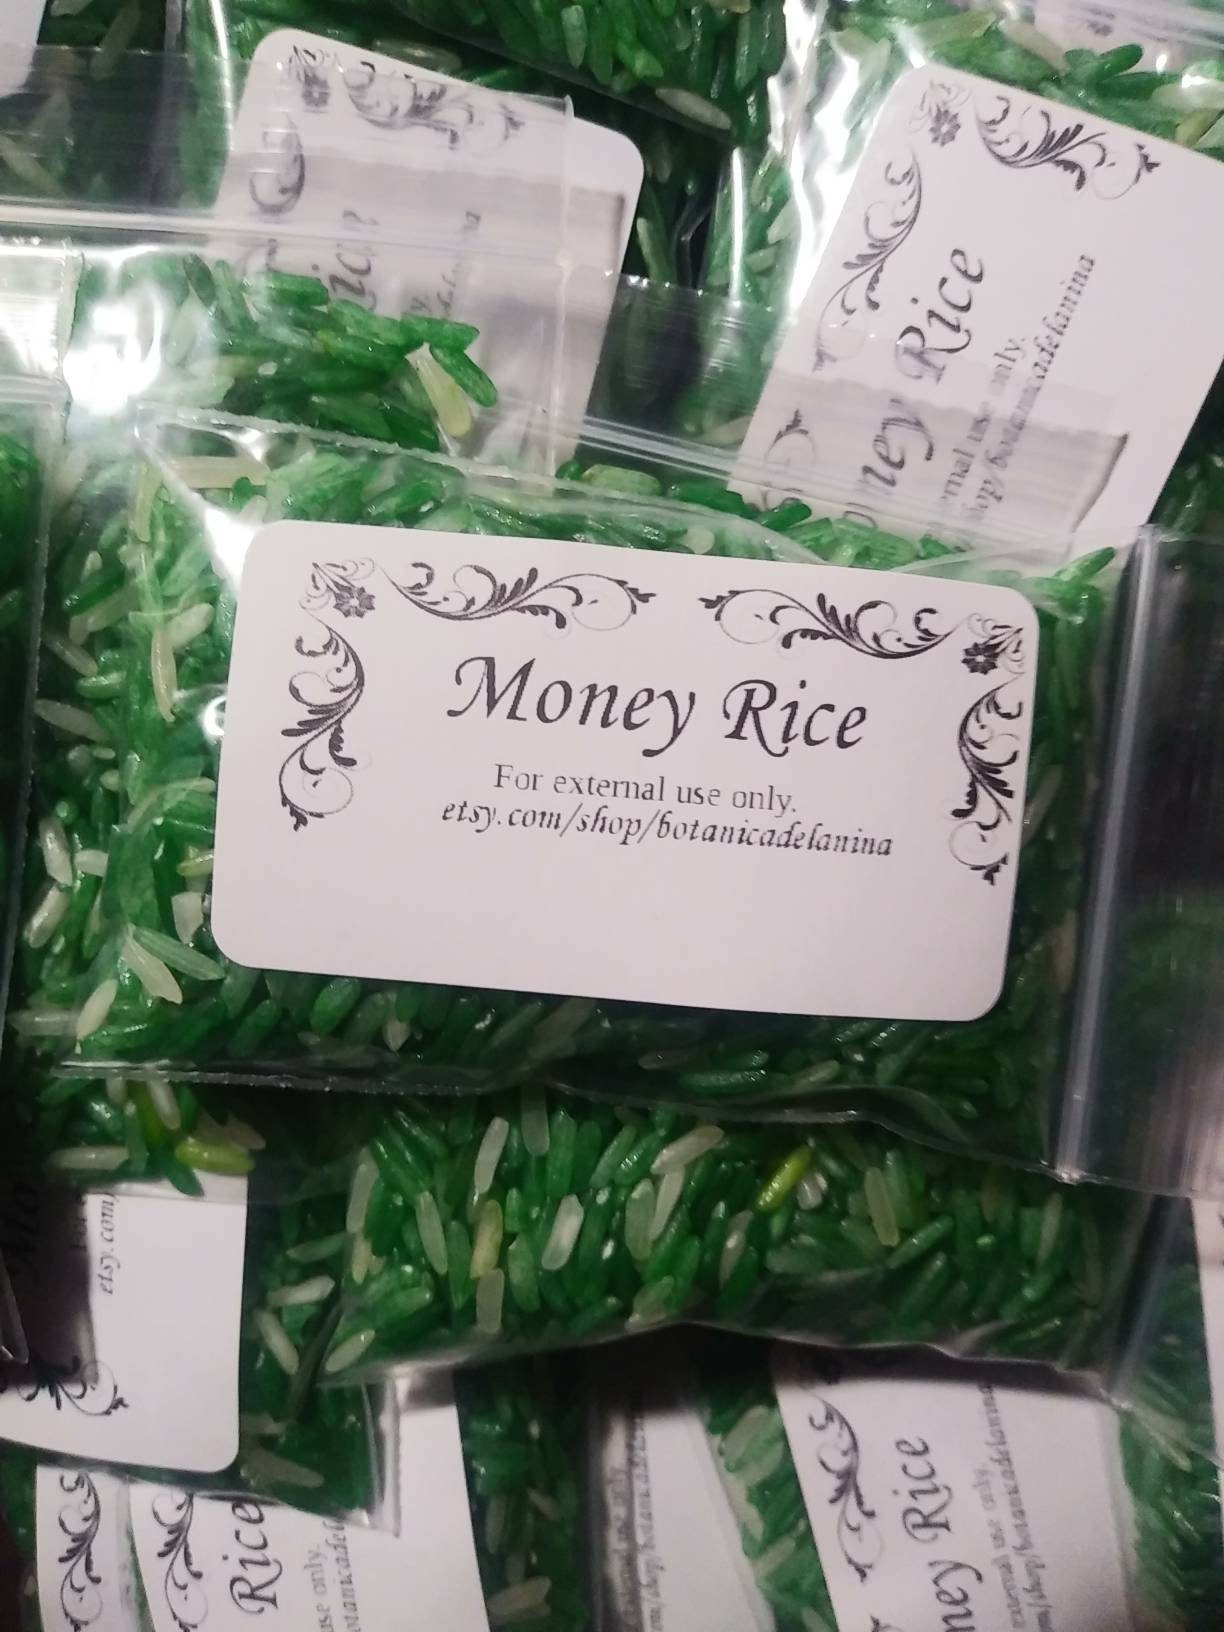 Hoodoo Green Money Rice – Luna Enchanted